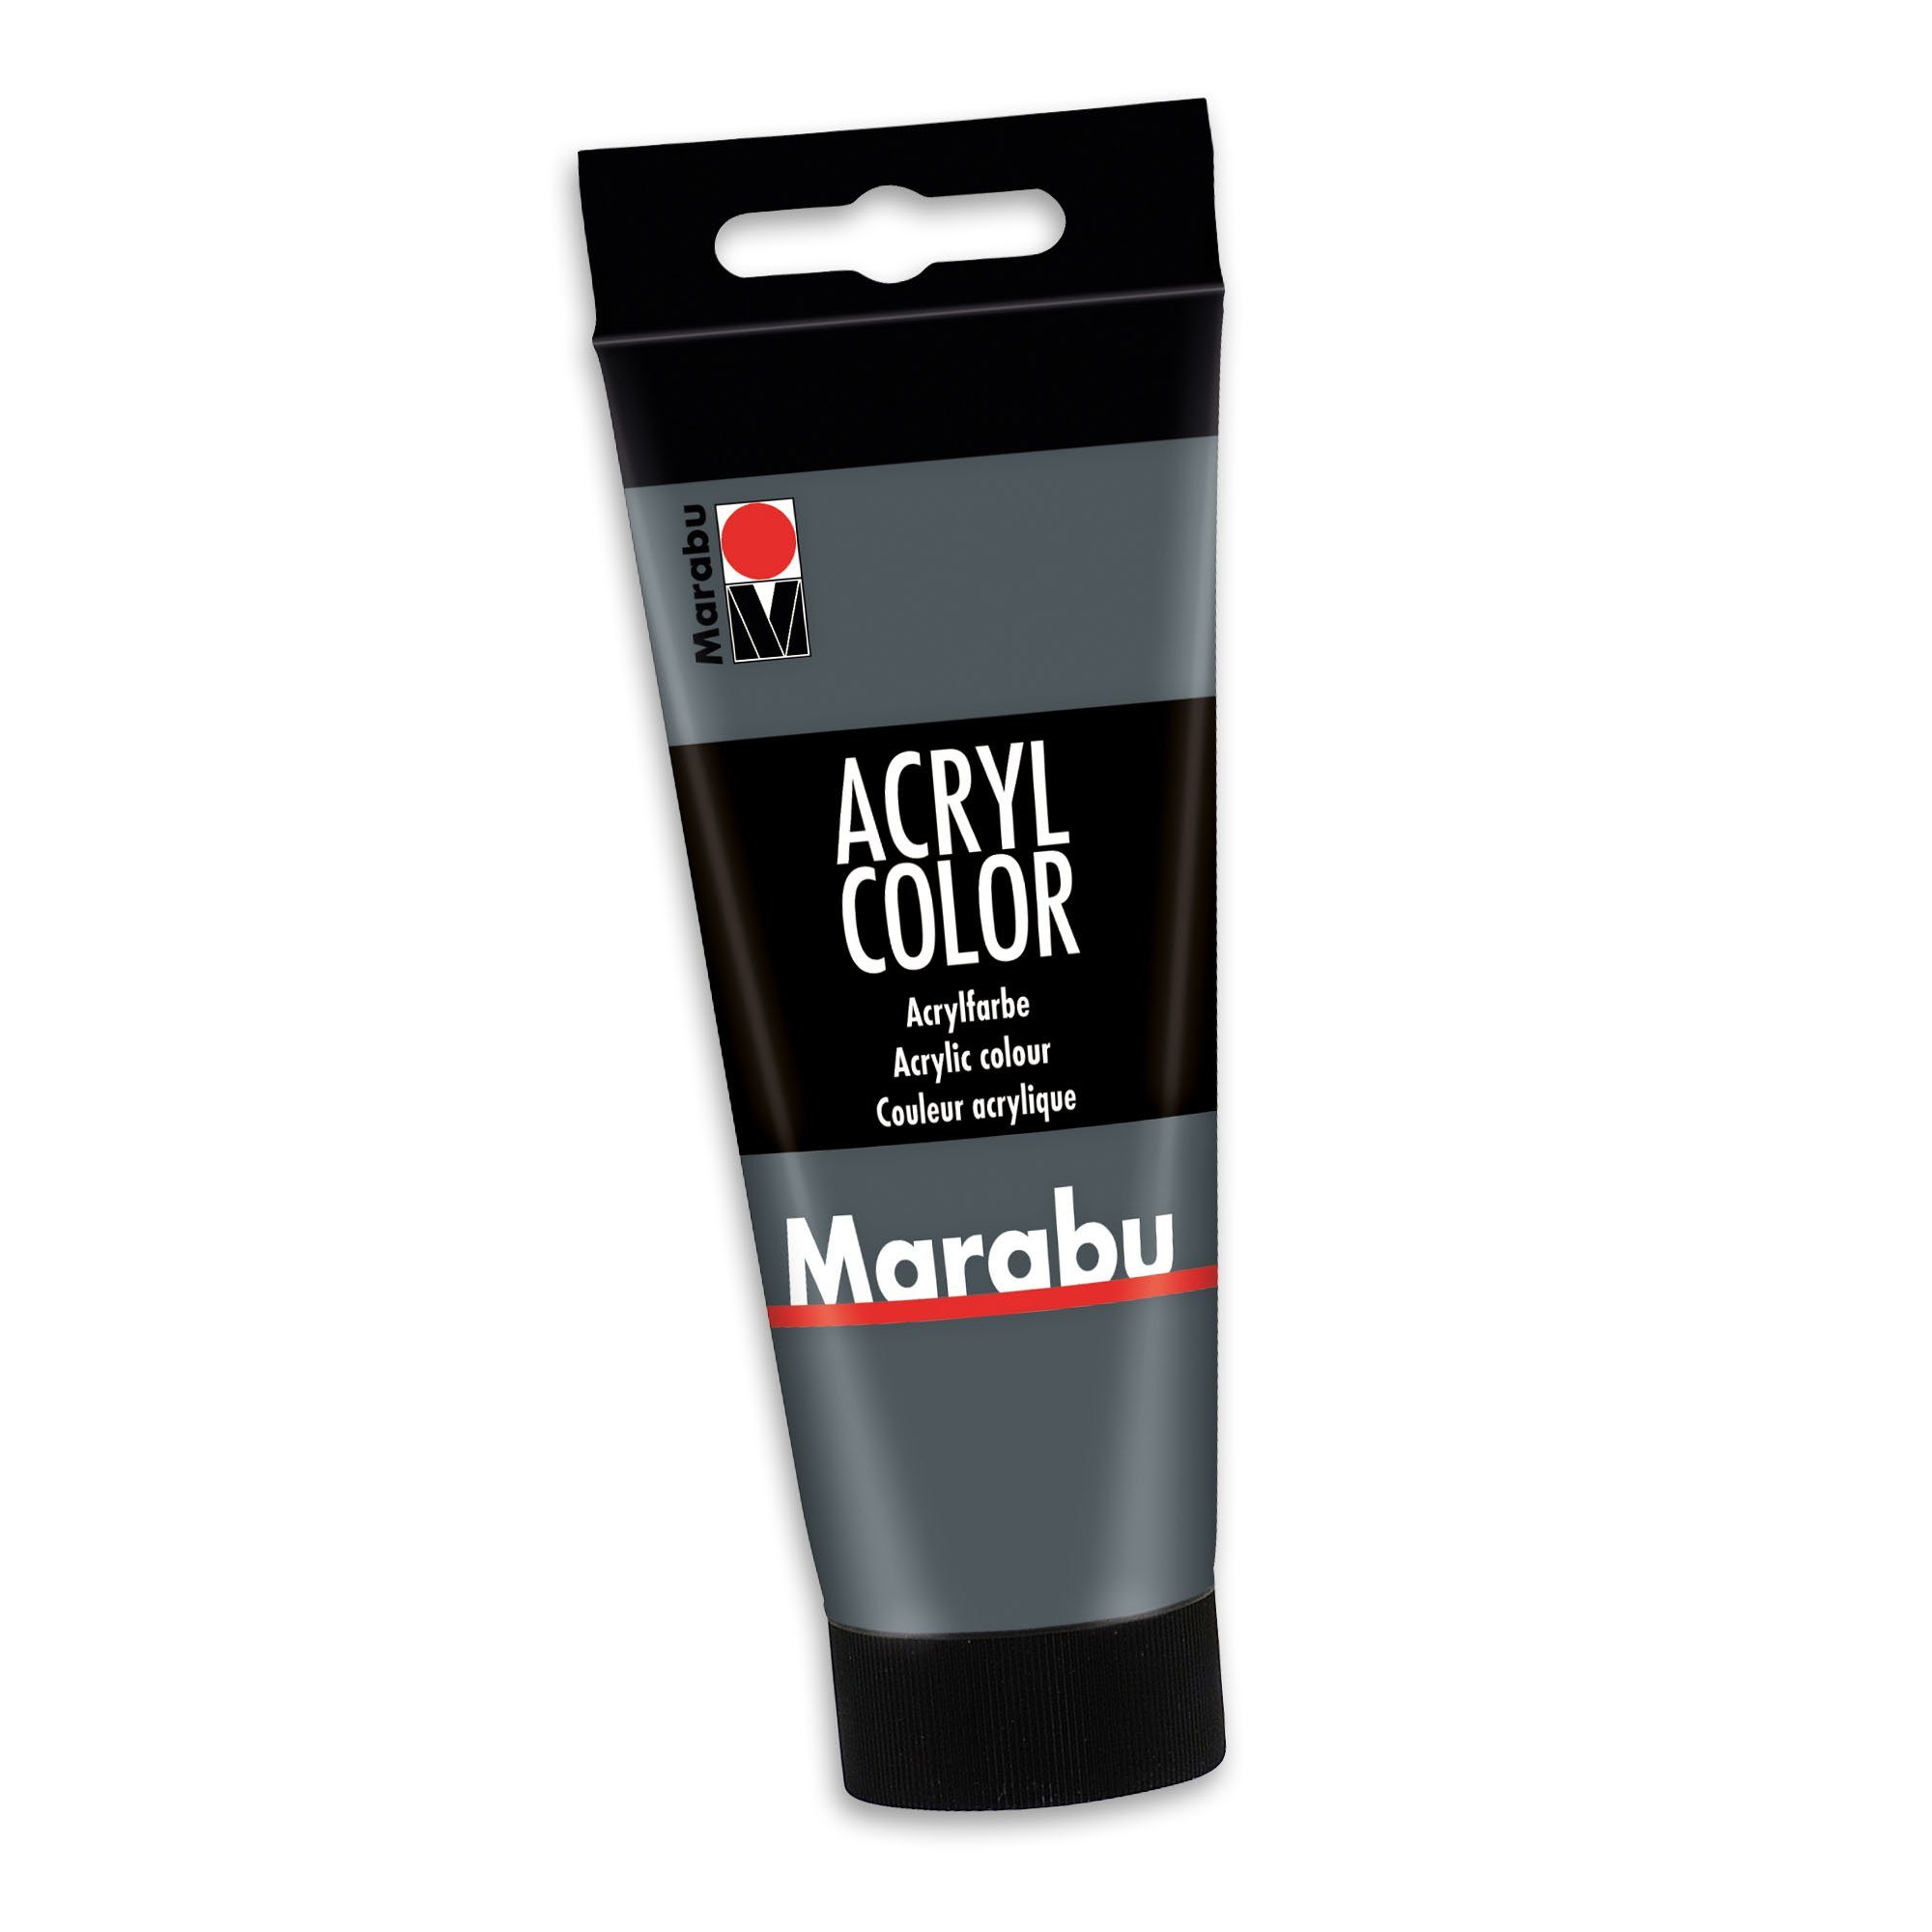 Marabu Acrylfarbe Marabu Acrylfarbe Acryl Color, 100 ml, dunkelgrau 079